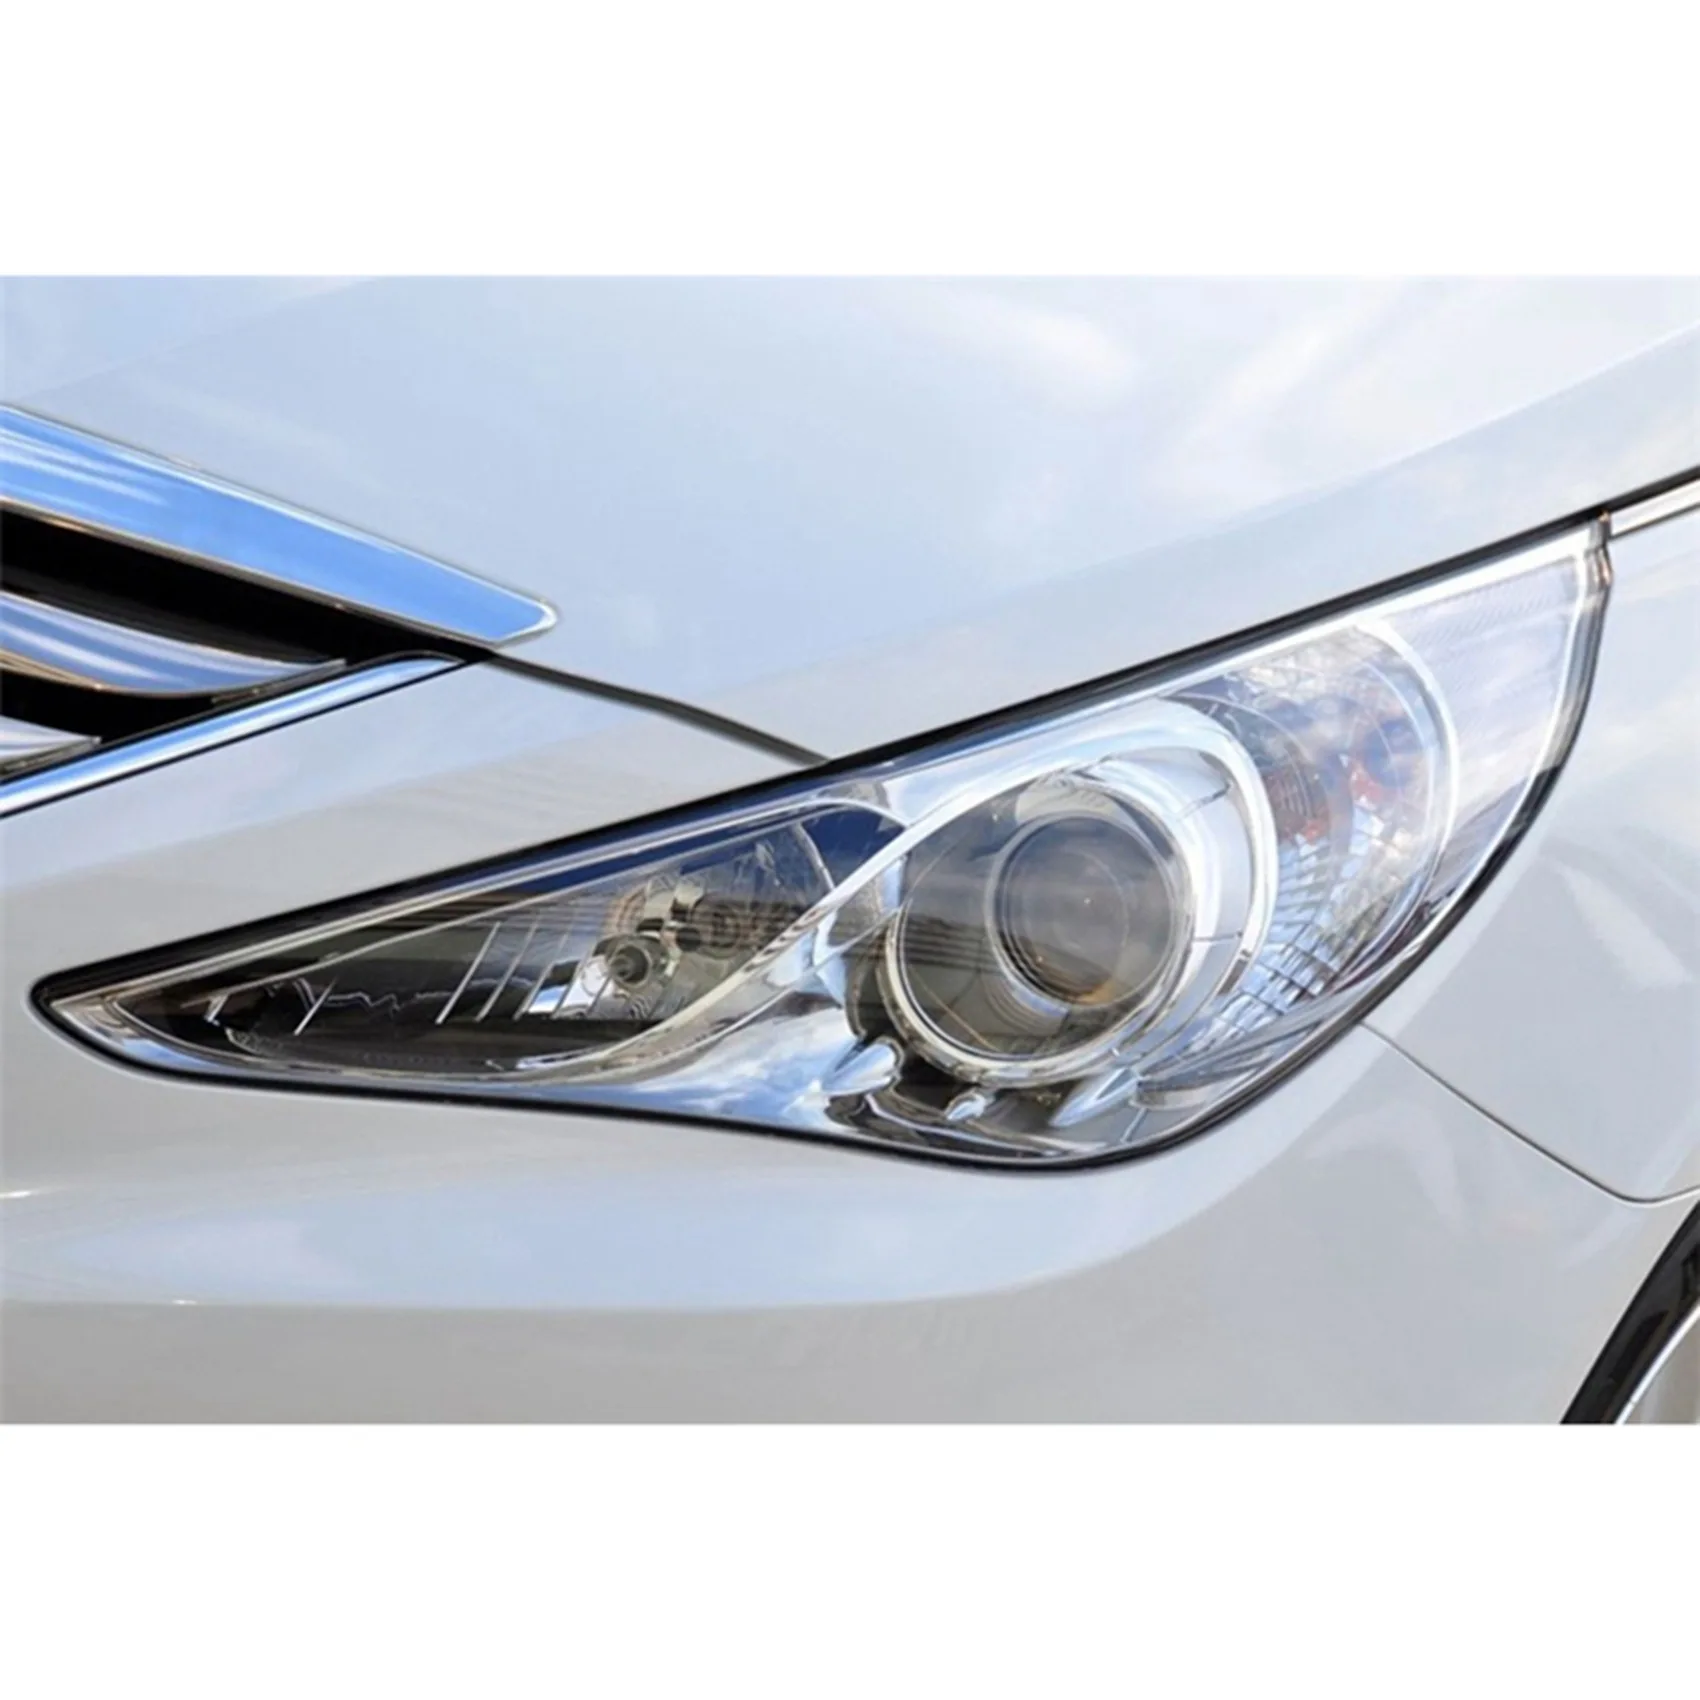 Объектив левой фары Головной свет Крышка лампы переднего автомобильного фонаря для Hyundai Sonata 2011 2012 2013 2014